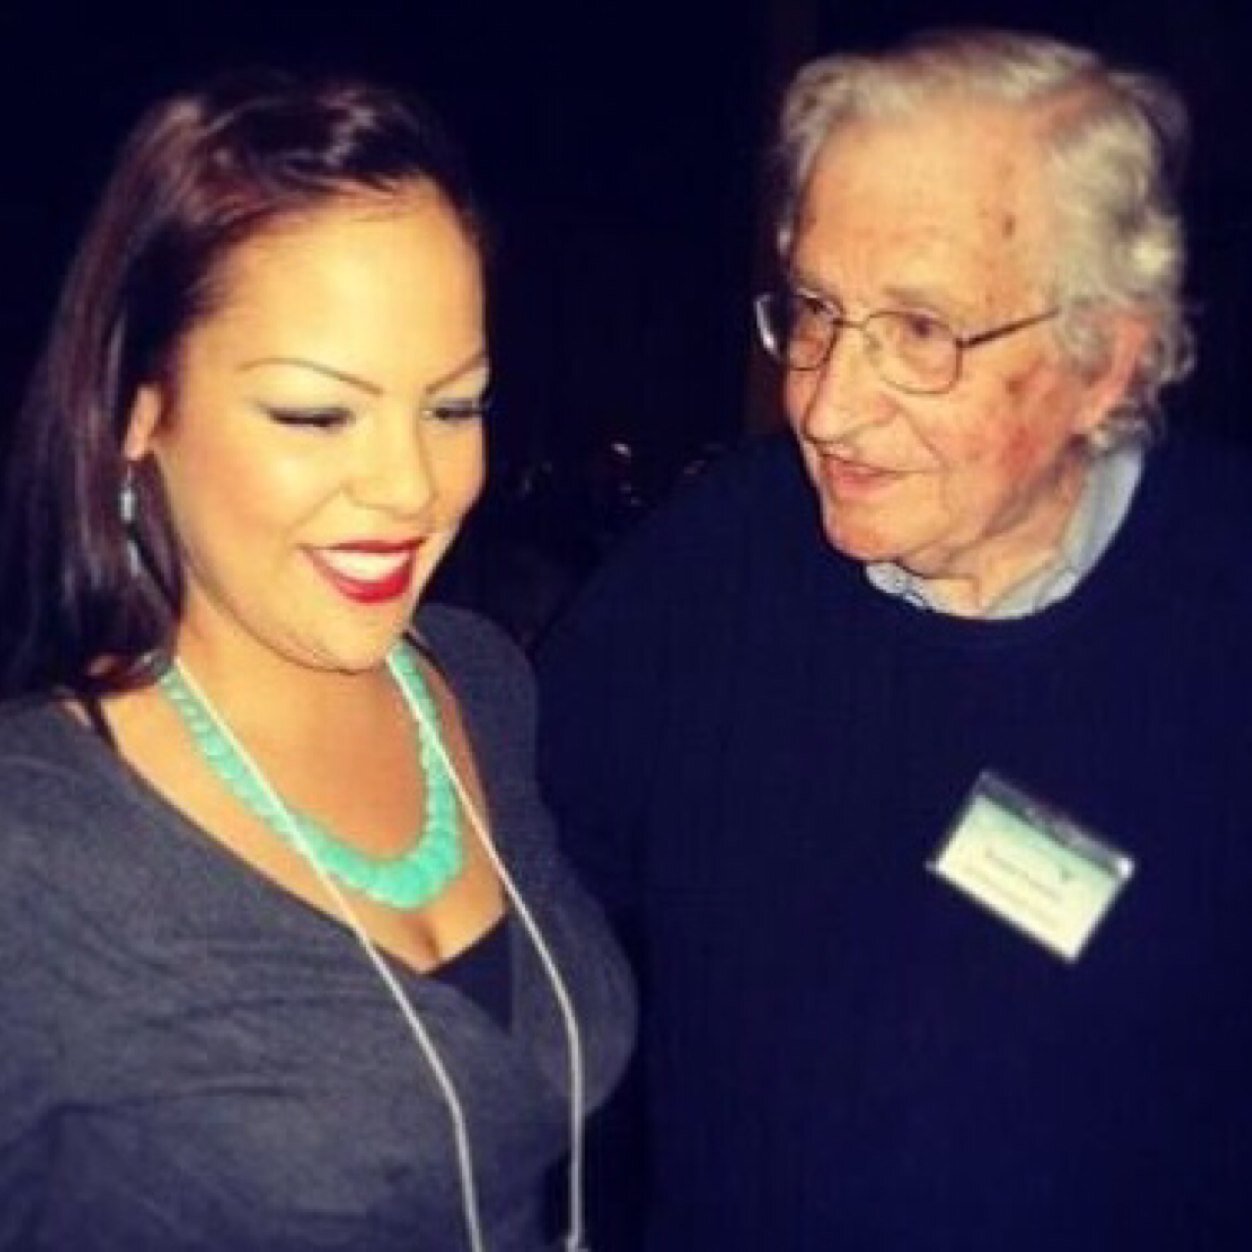 Chrystal Lameman with Noam Chomsky in 2013